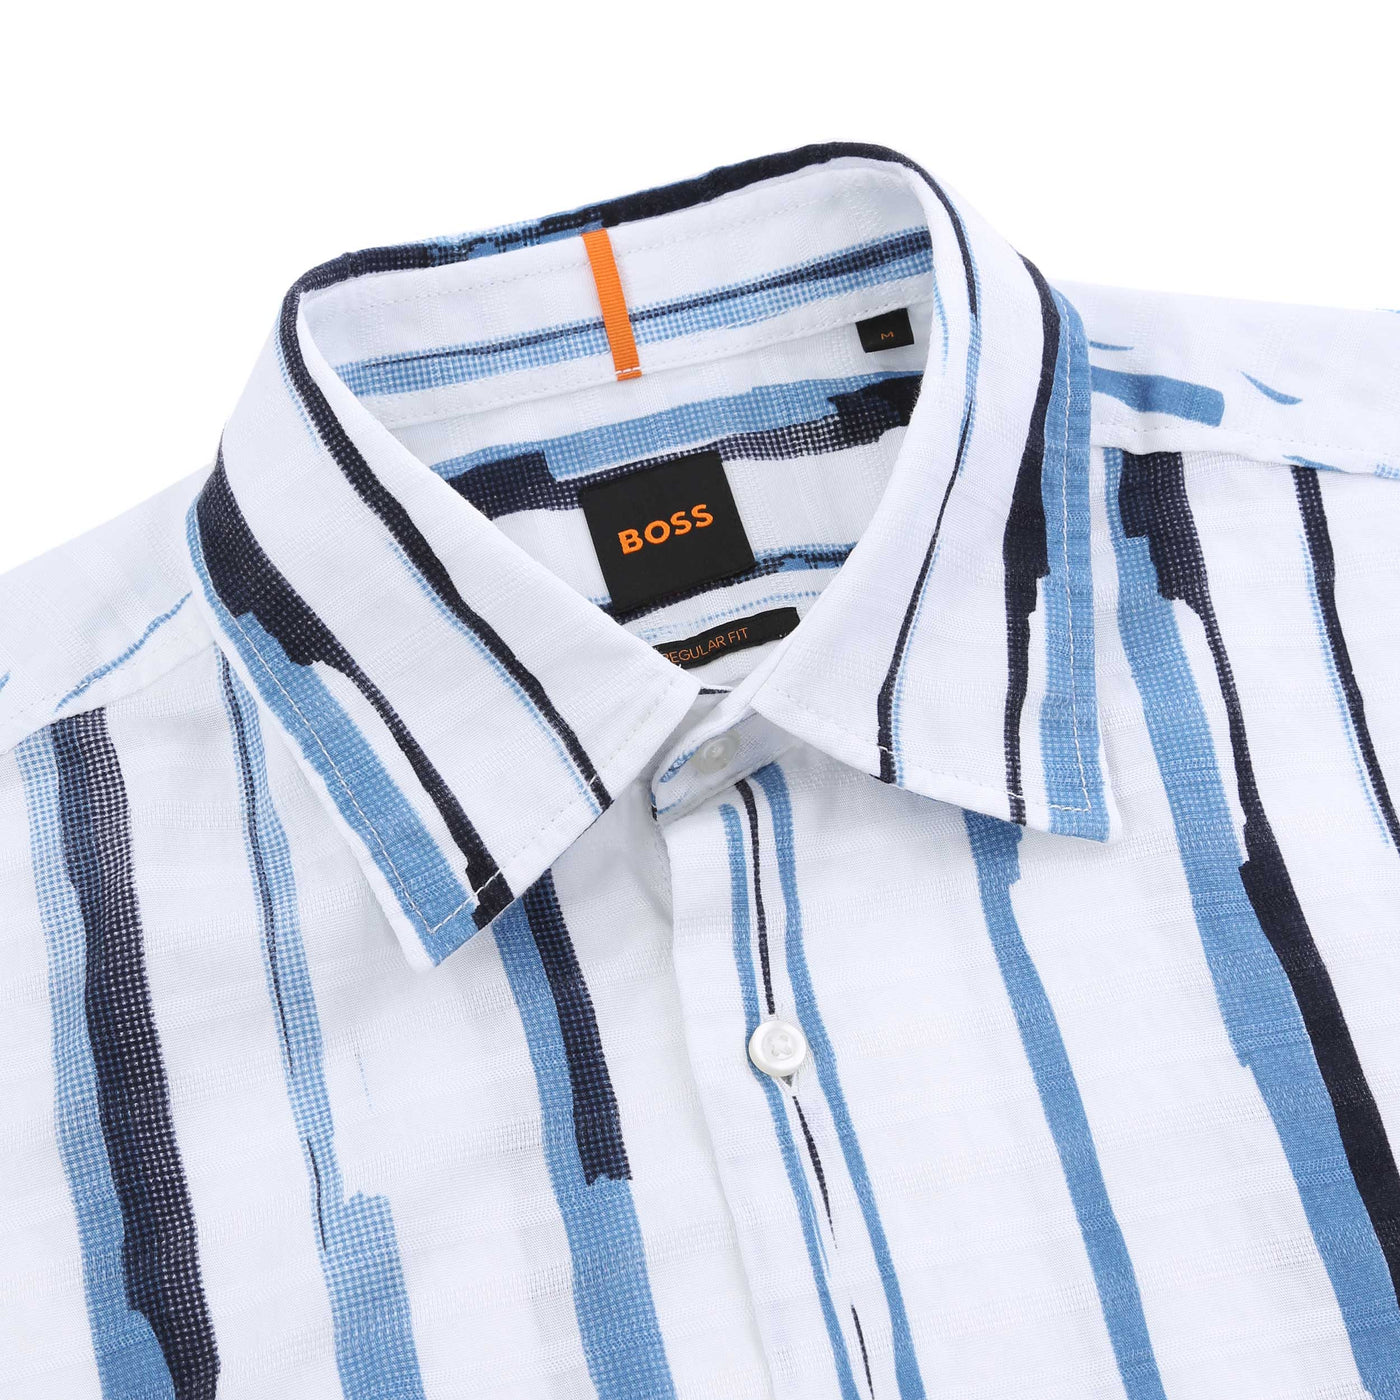 BOSS Rash 2 Short Sleeve Shirt in White & Blue Collar